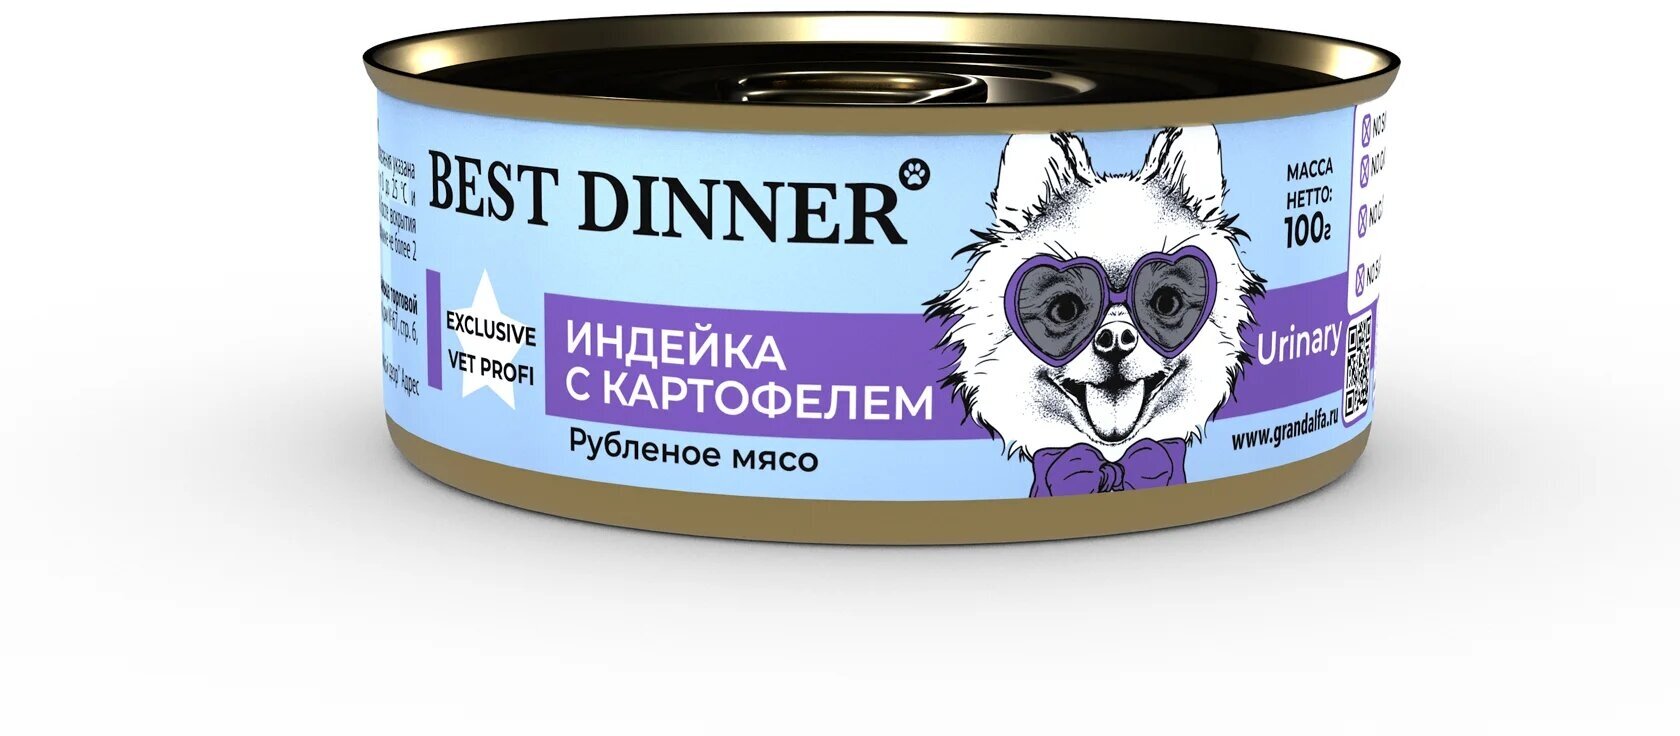 Best Dinner Vet Profi Urinary Exclusive 12шт по 100г индейка консервы для собак